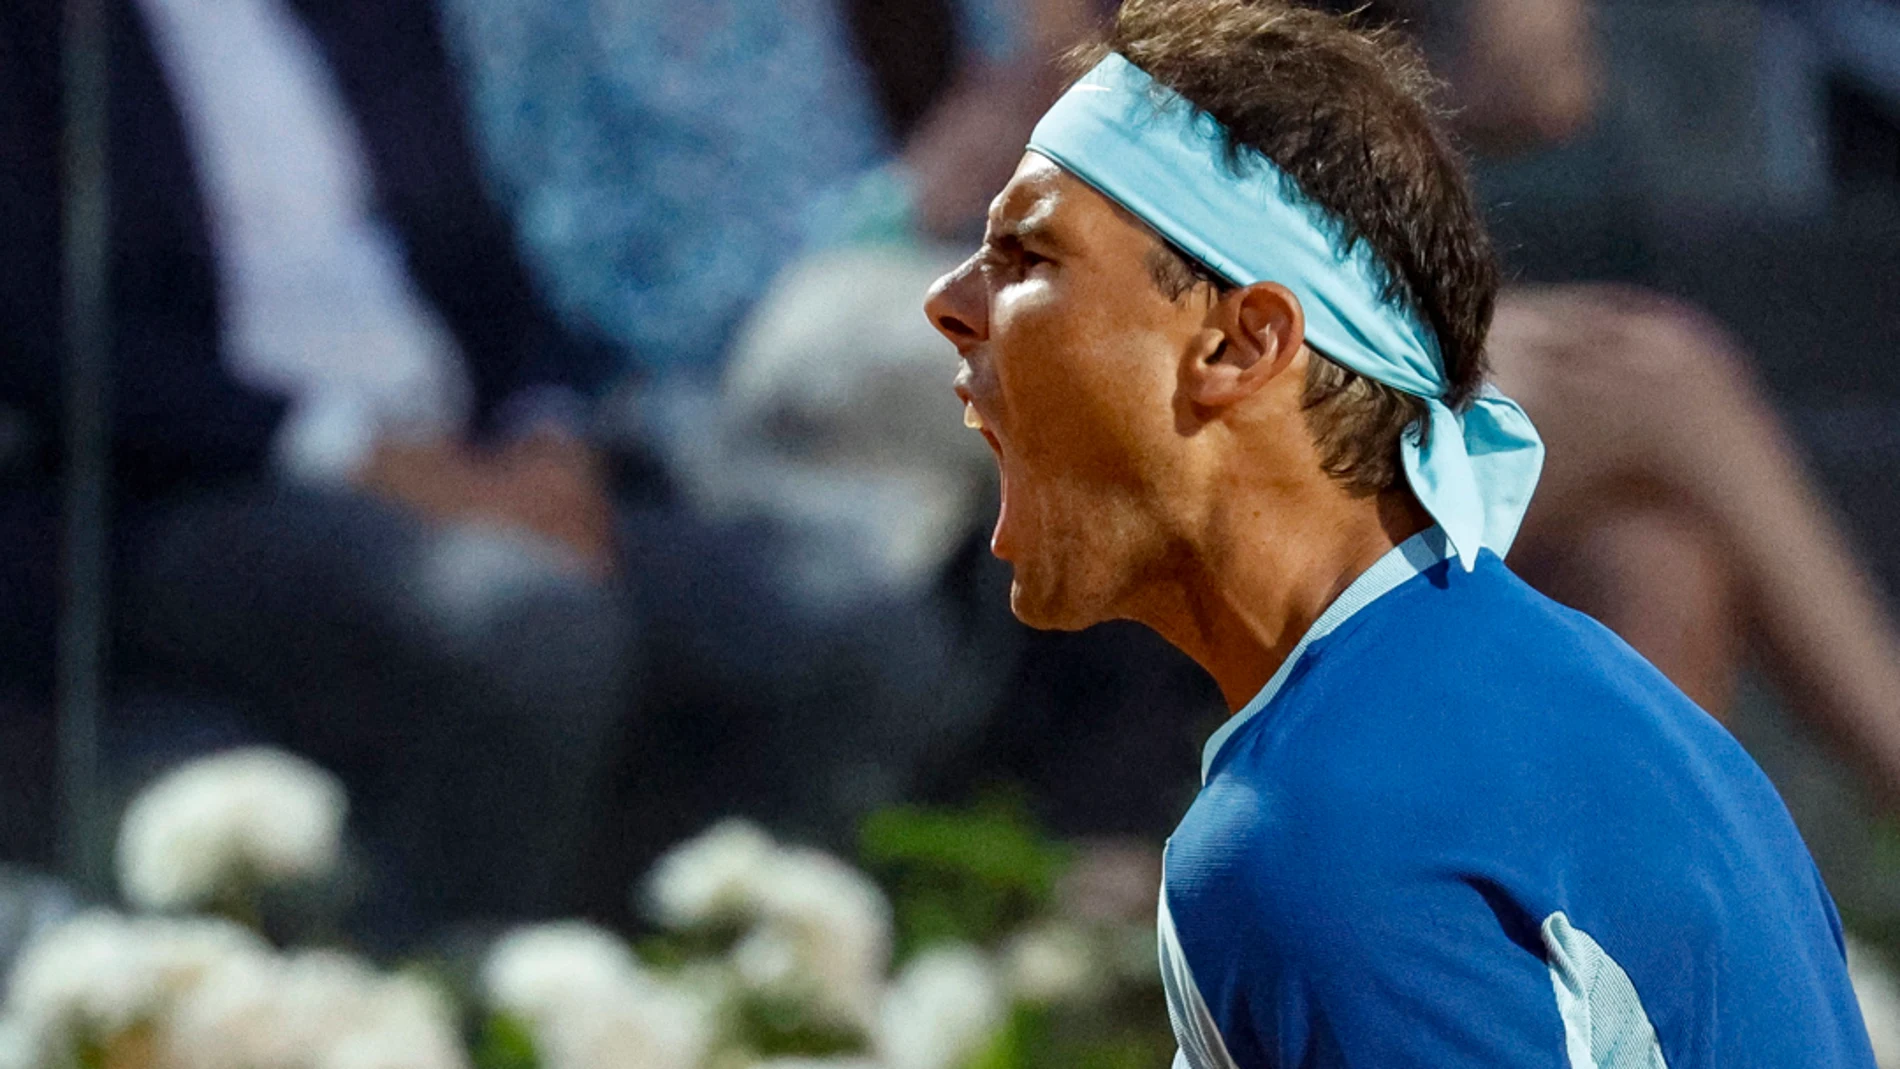 cambiar Párrafo Chapoteo Rafael Nadal - Denis Shapovalov: Resultado y resumen del partido de tenis  del Masters 1000 de Roma,